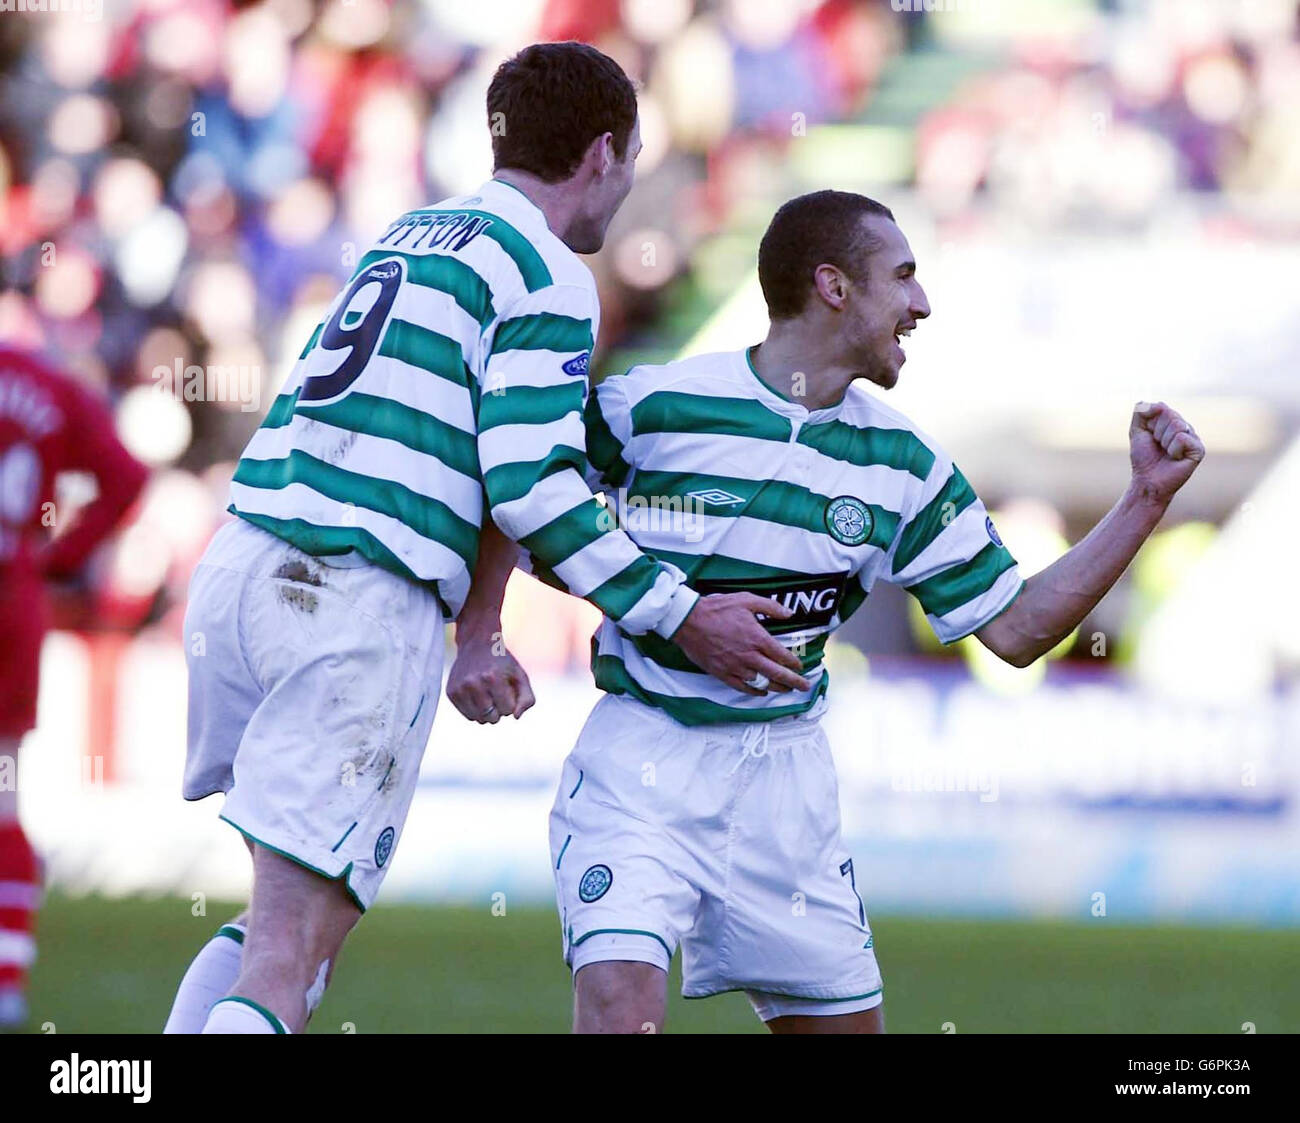 Herik Larsson von Celtic feiert sein Tor gegen Aberdeen während des Spiels der Bank of Scotland Premier League im Pittodrie Stadium, Aberdeen, Samstag, 24. Januar 2004. Celtic gewann 3:1. NUR FÜR REDAKTIONELLE ZWECKE. Stockfoto